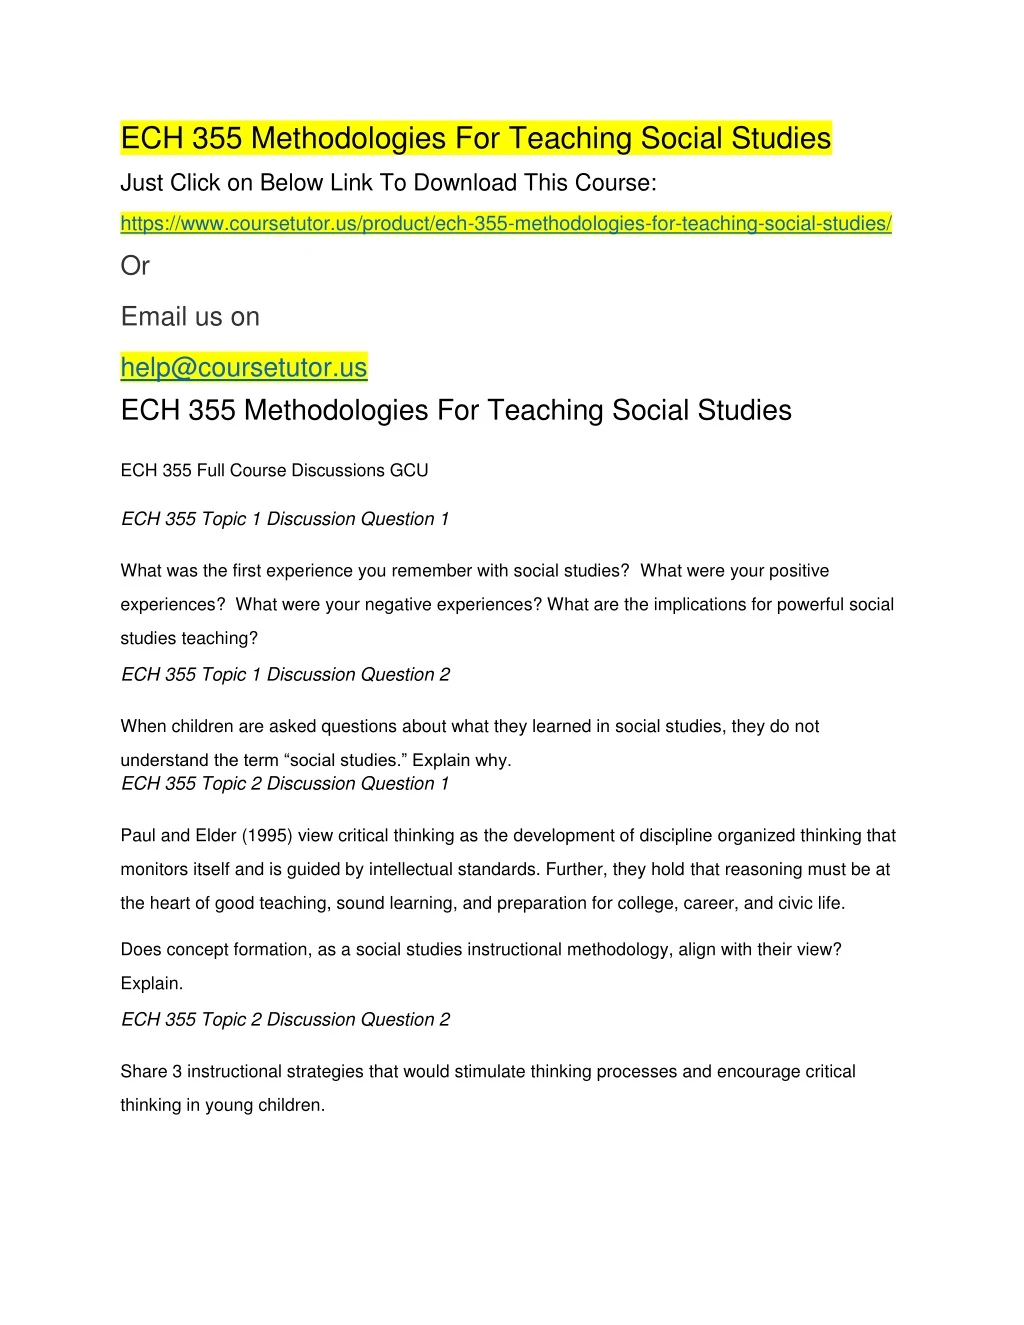 ech 355 methodologies for teaching social studies